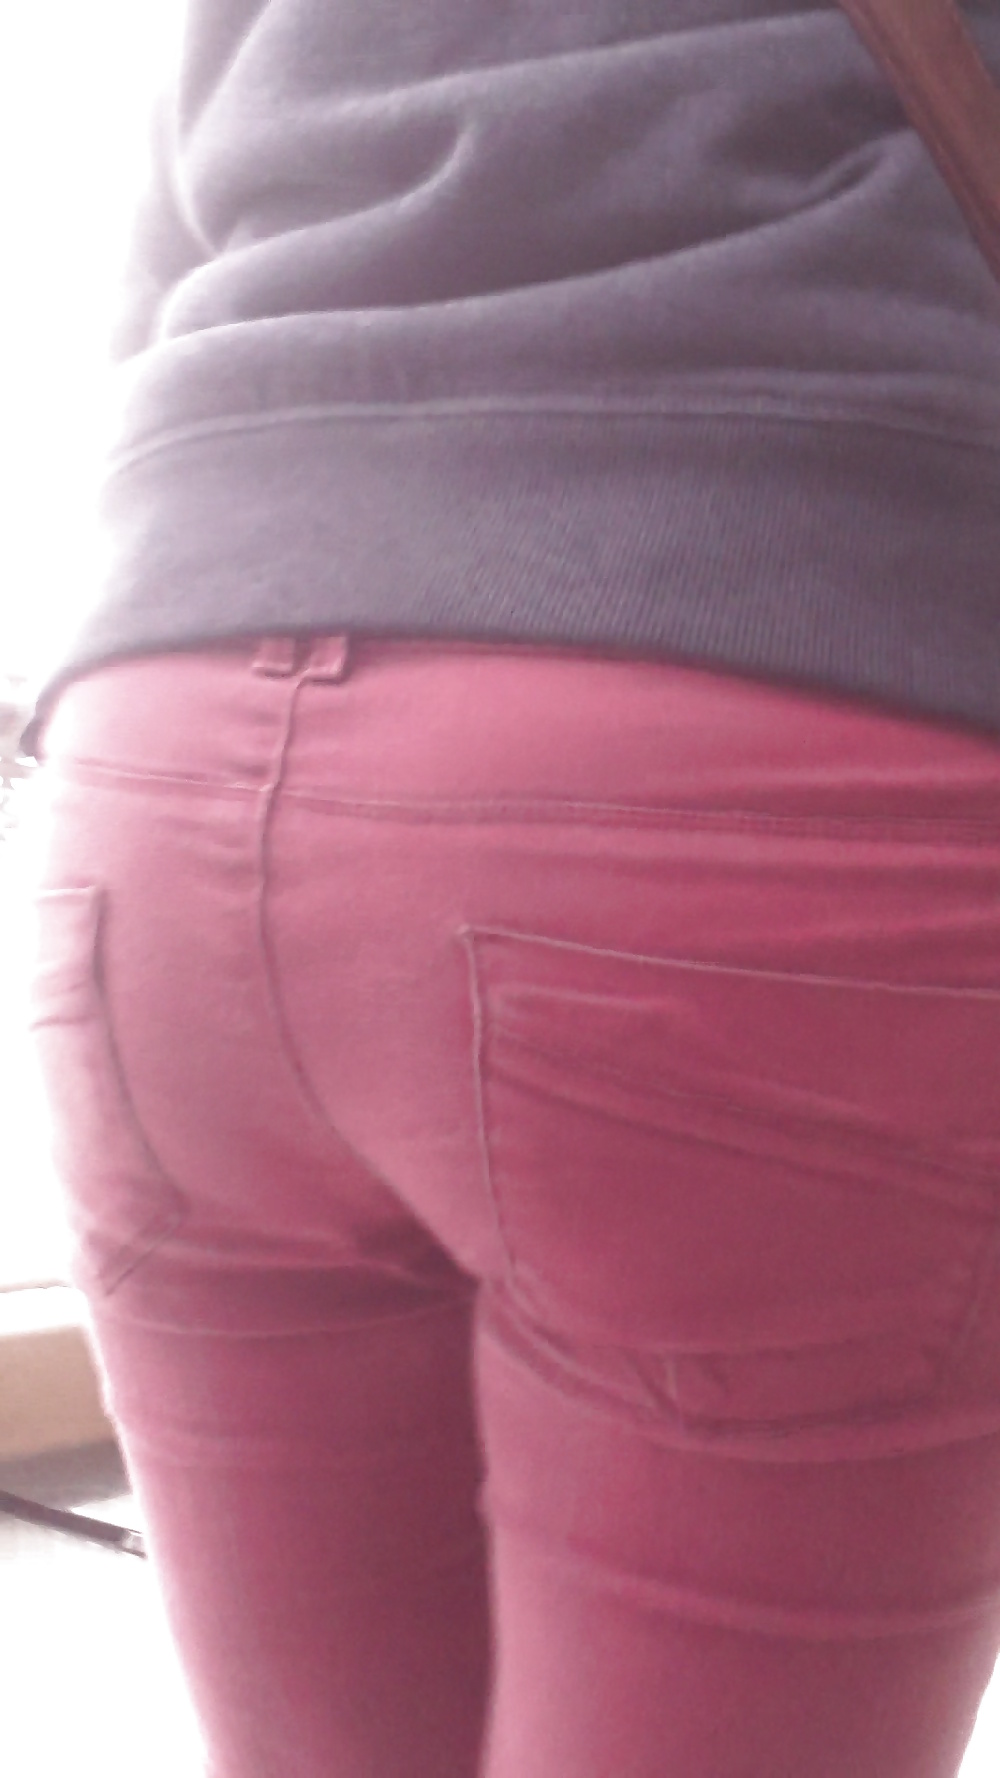 Popular teen girls ass & butt in jeans Part 6 #32010283